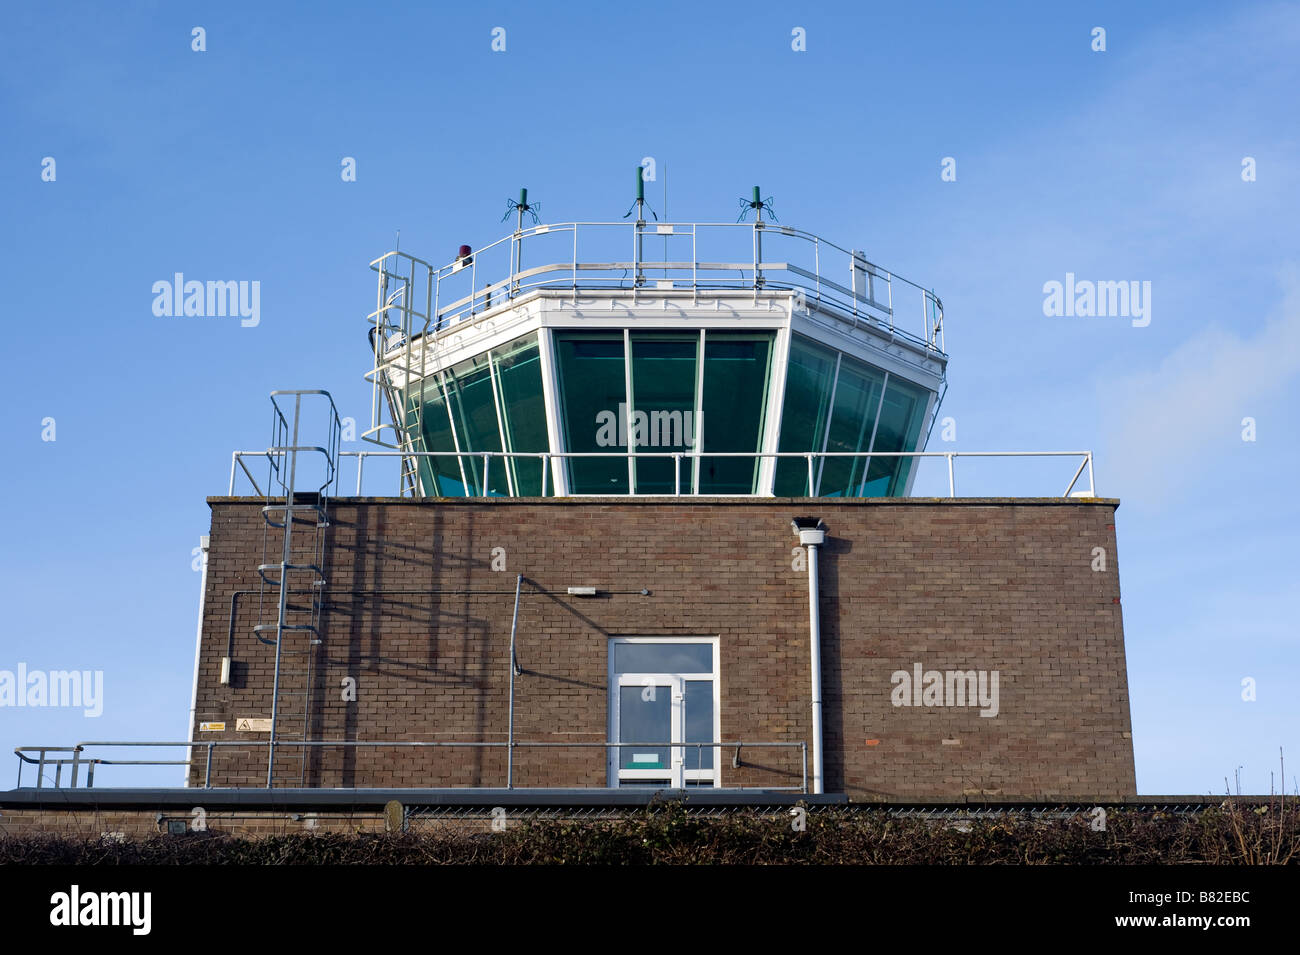 Tour de contrôle de la circulation aérienne (ATC), RAF Corsham, Wiltshire Banque D'Images